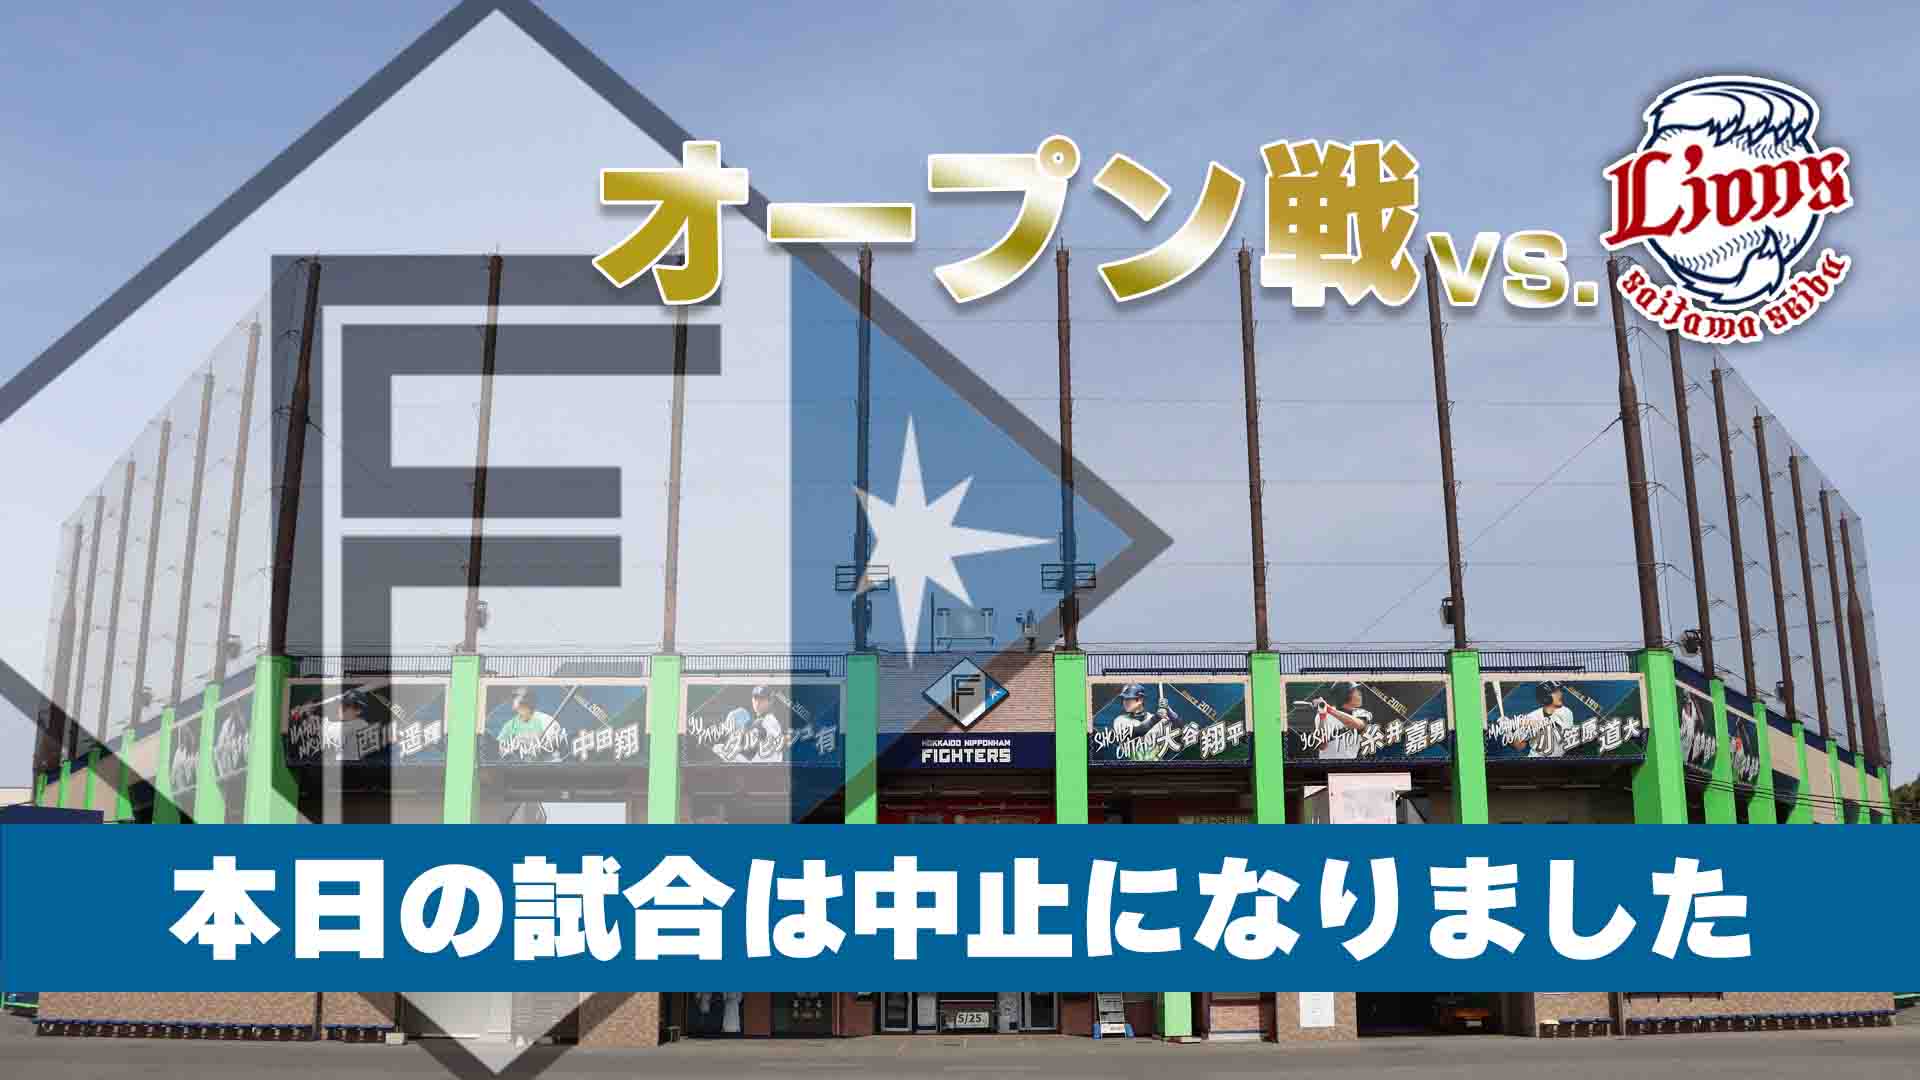 3月6日 (水) オープン戦 vs 埼玉西武 12:55～